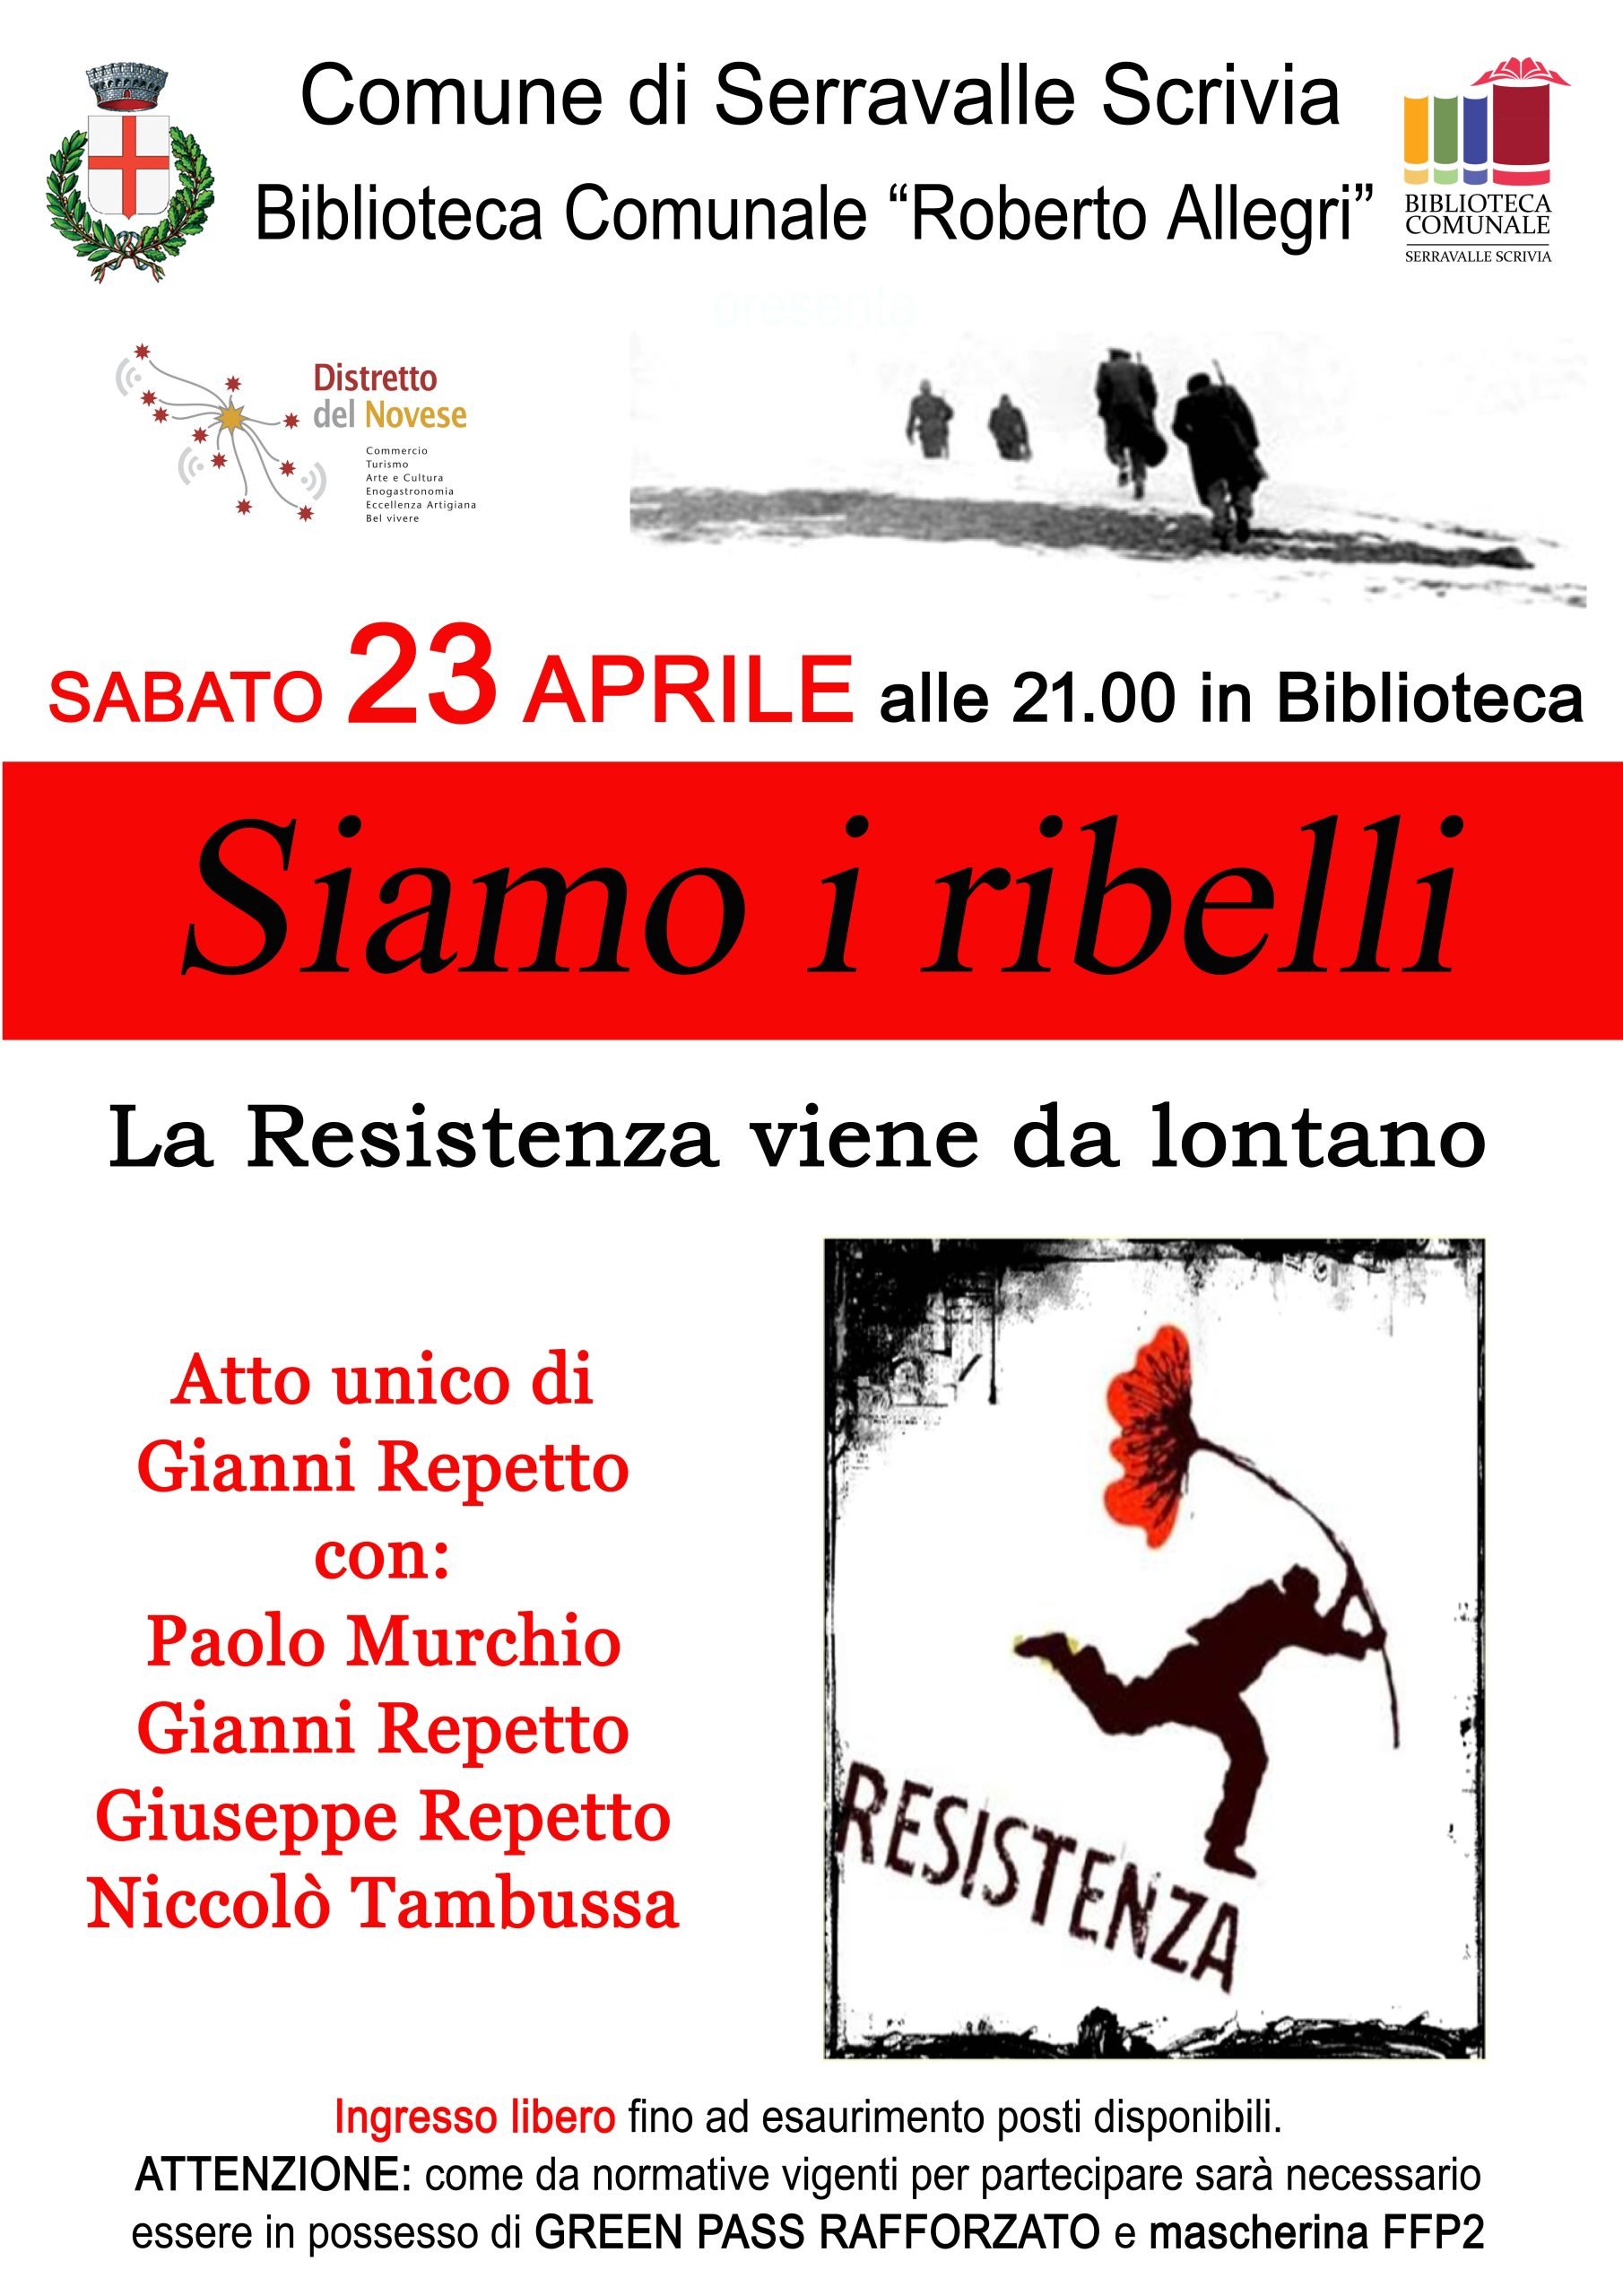 Il 23 aprile a Serravalle Scrivia “Siamo i ribelli. La Resistenza viene da lontano”